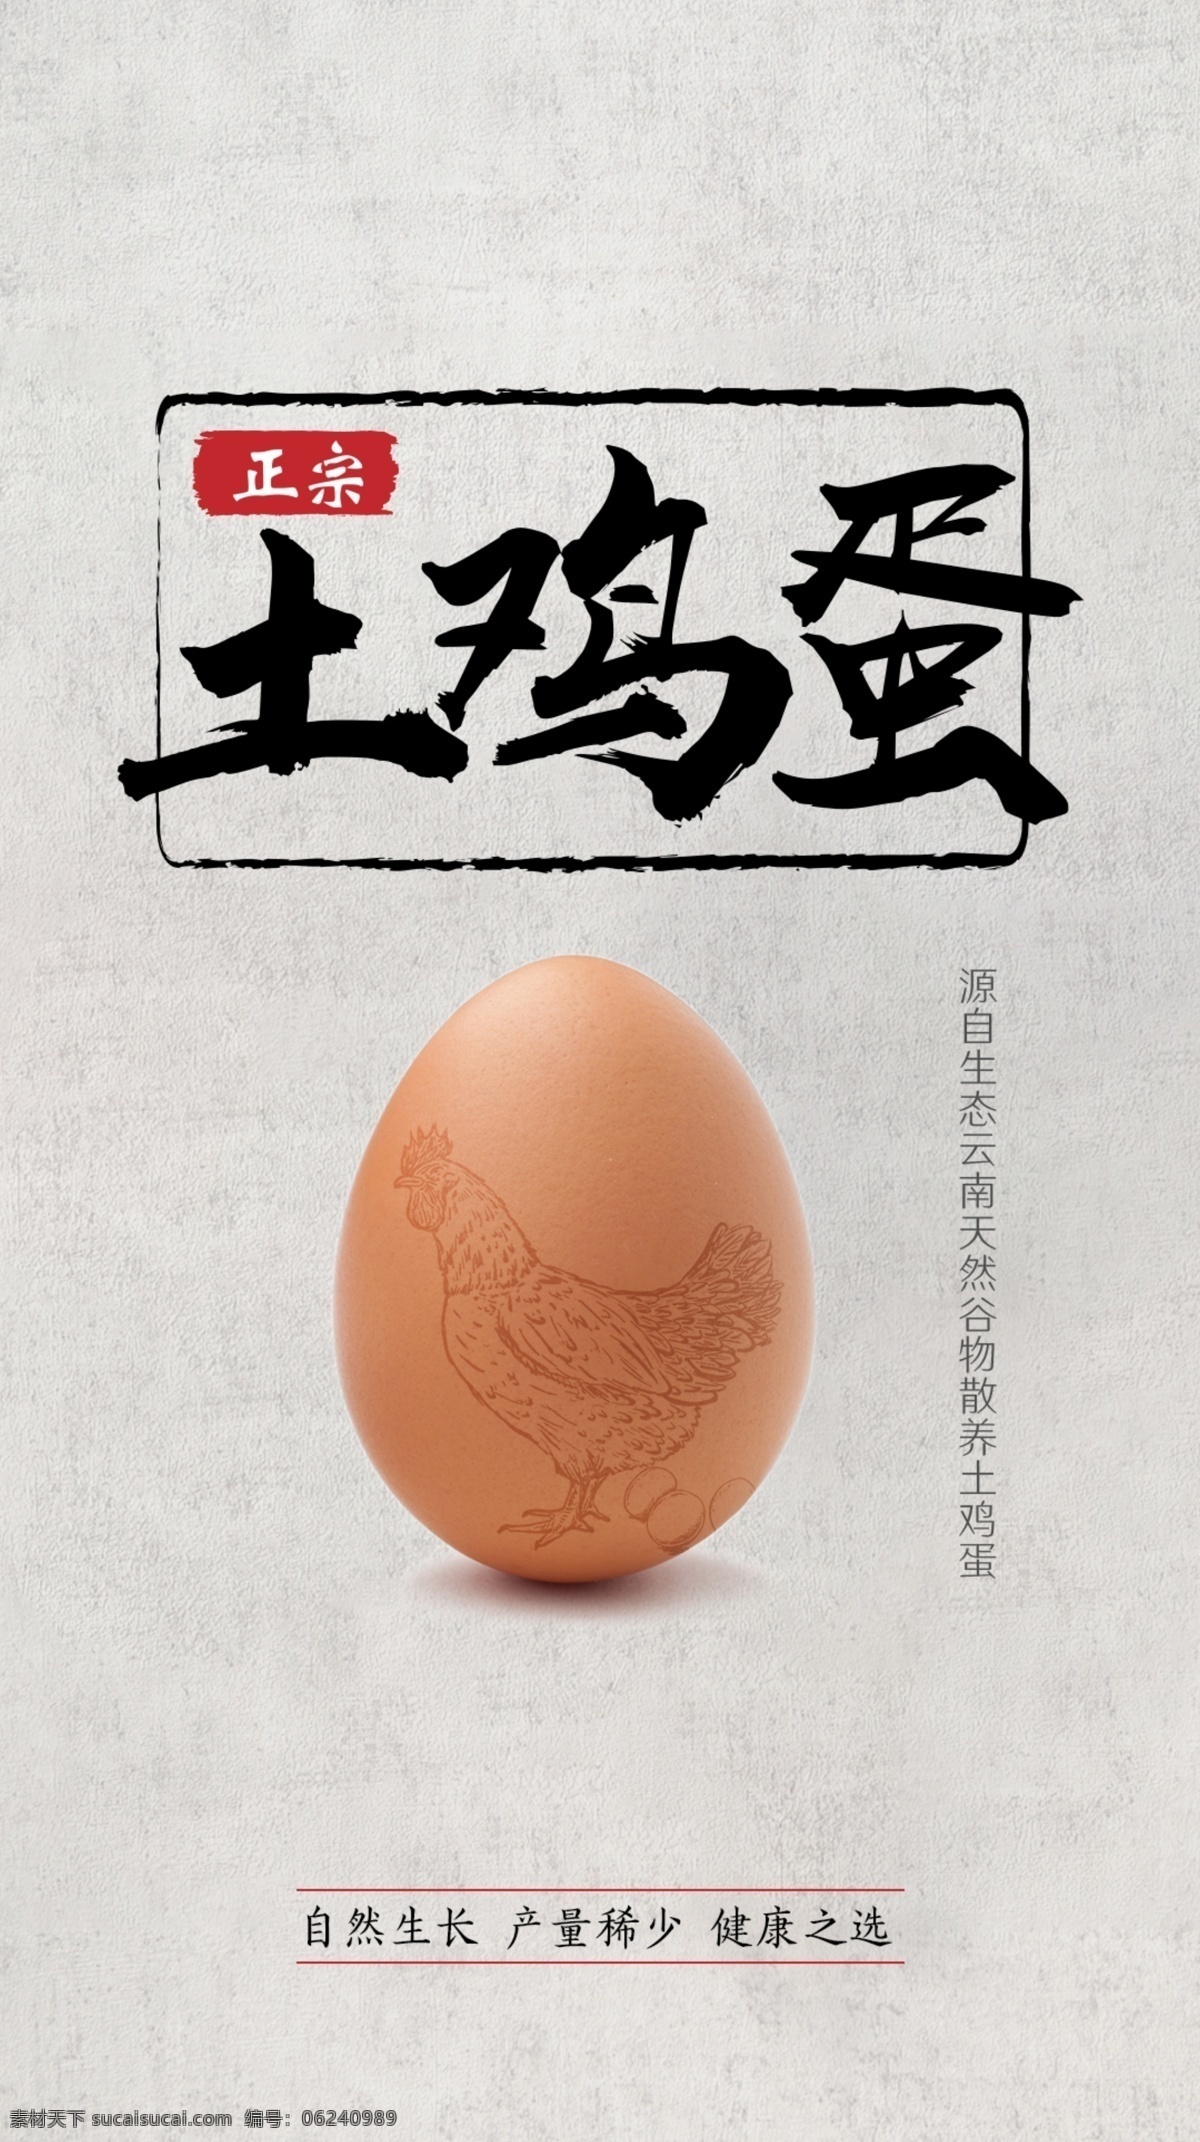 鸡蛋海报 鸡蛋 海报 招贴 宣传 土鸡蛋